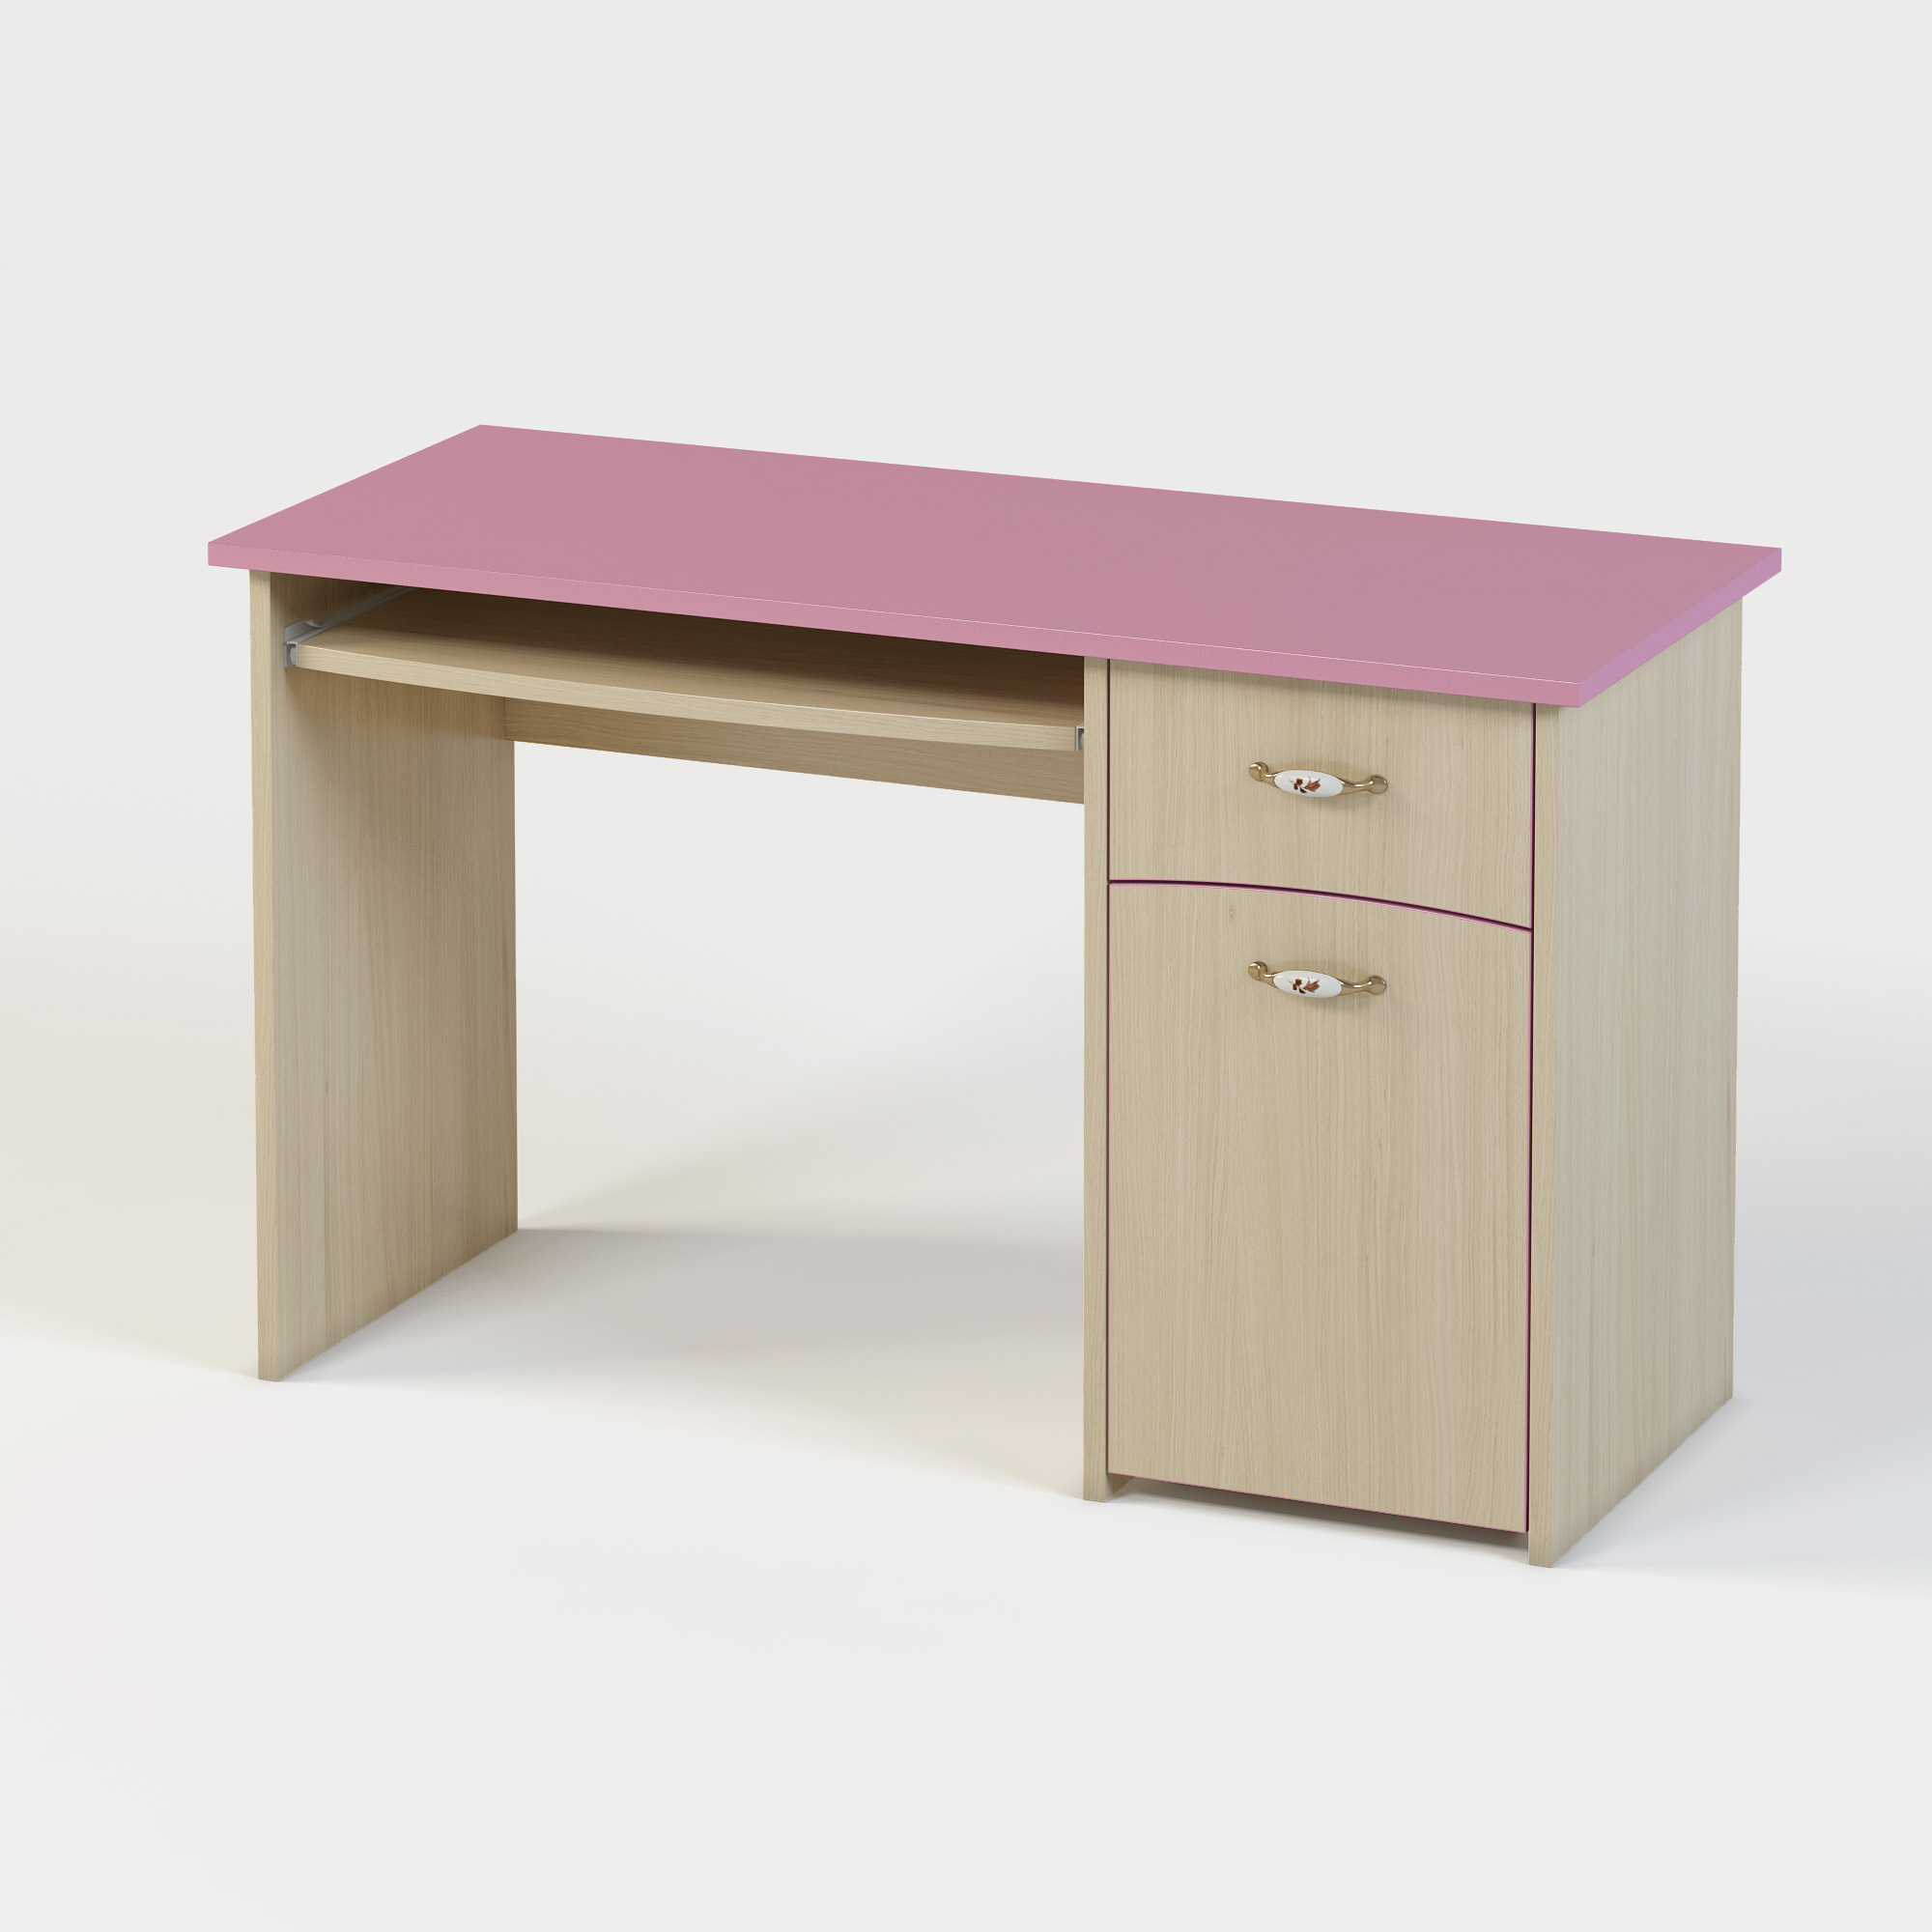 розовый стол для девочки